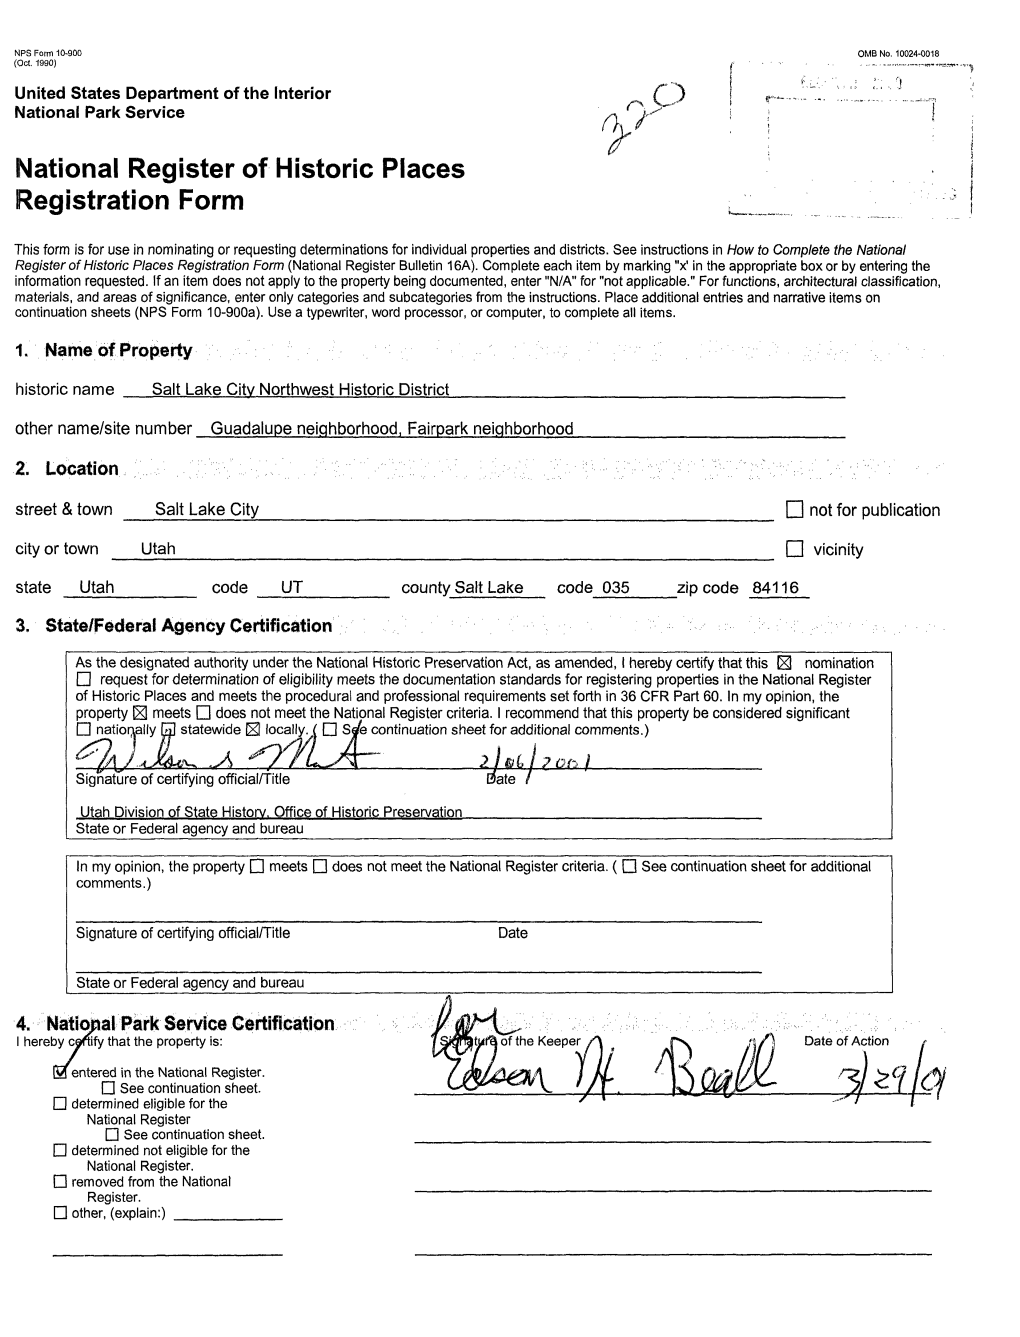 National Register of Historic Places Registration Form ^